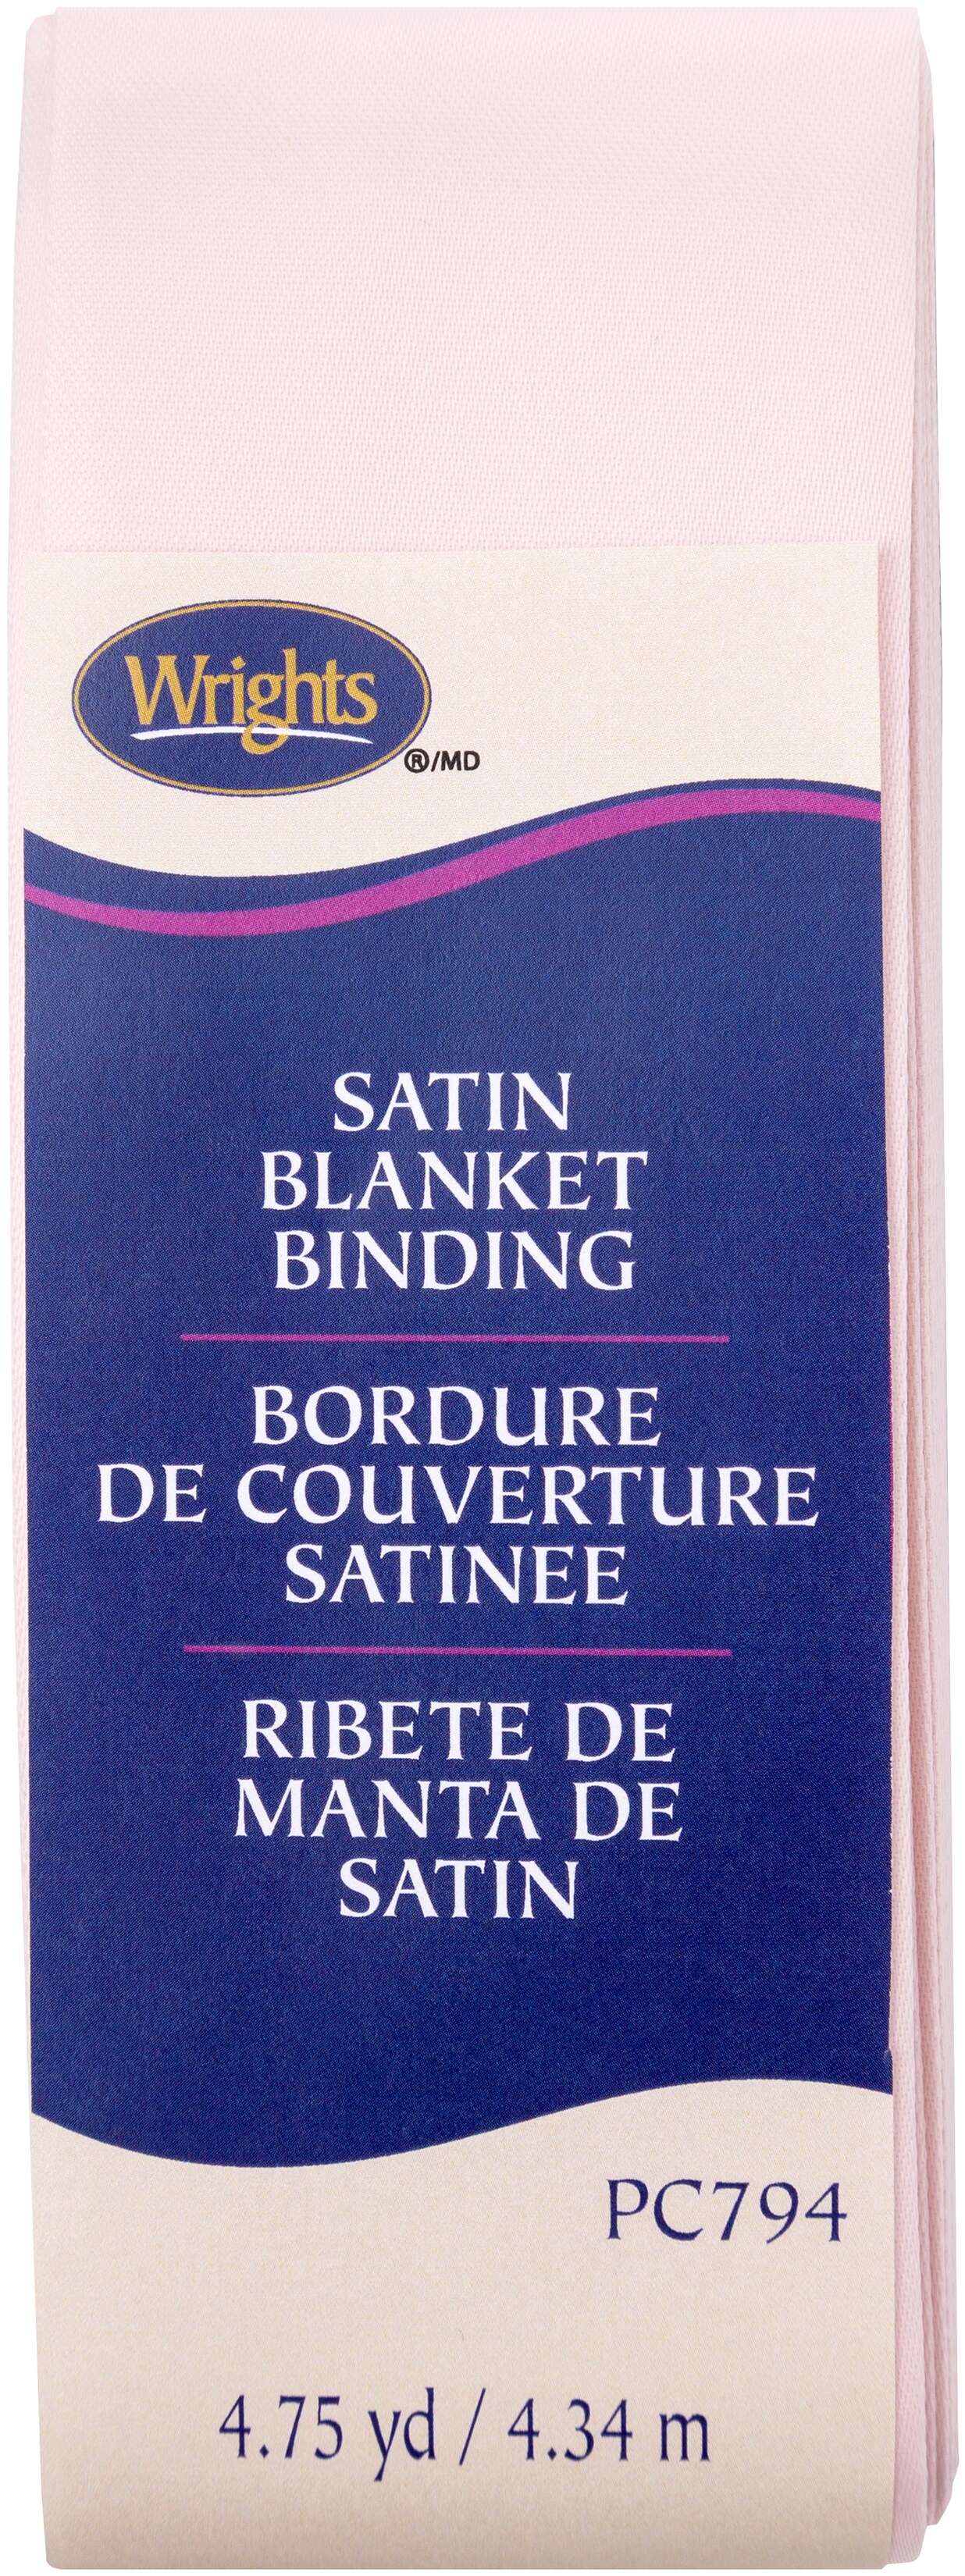 Wrights Blanket Bindings, PC794, Satin Blanket Bindings